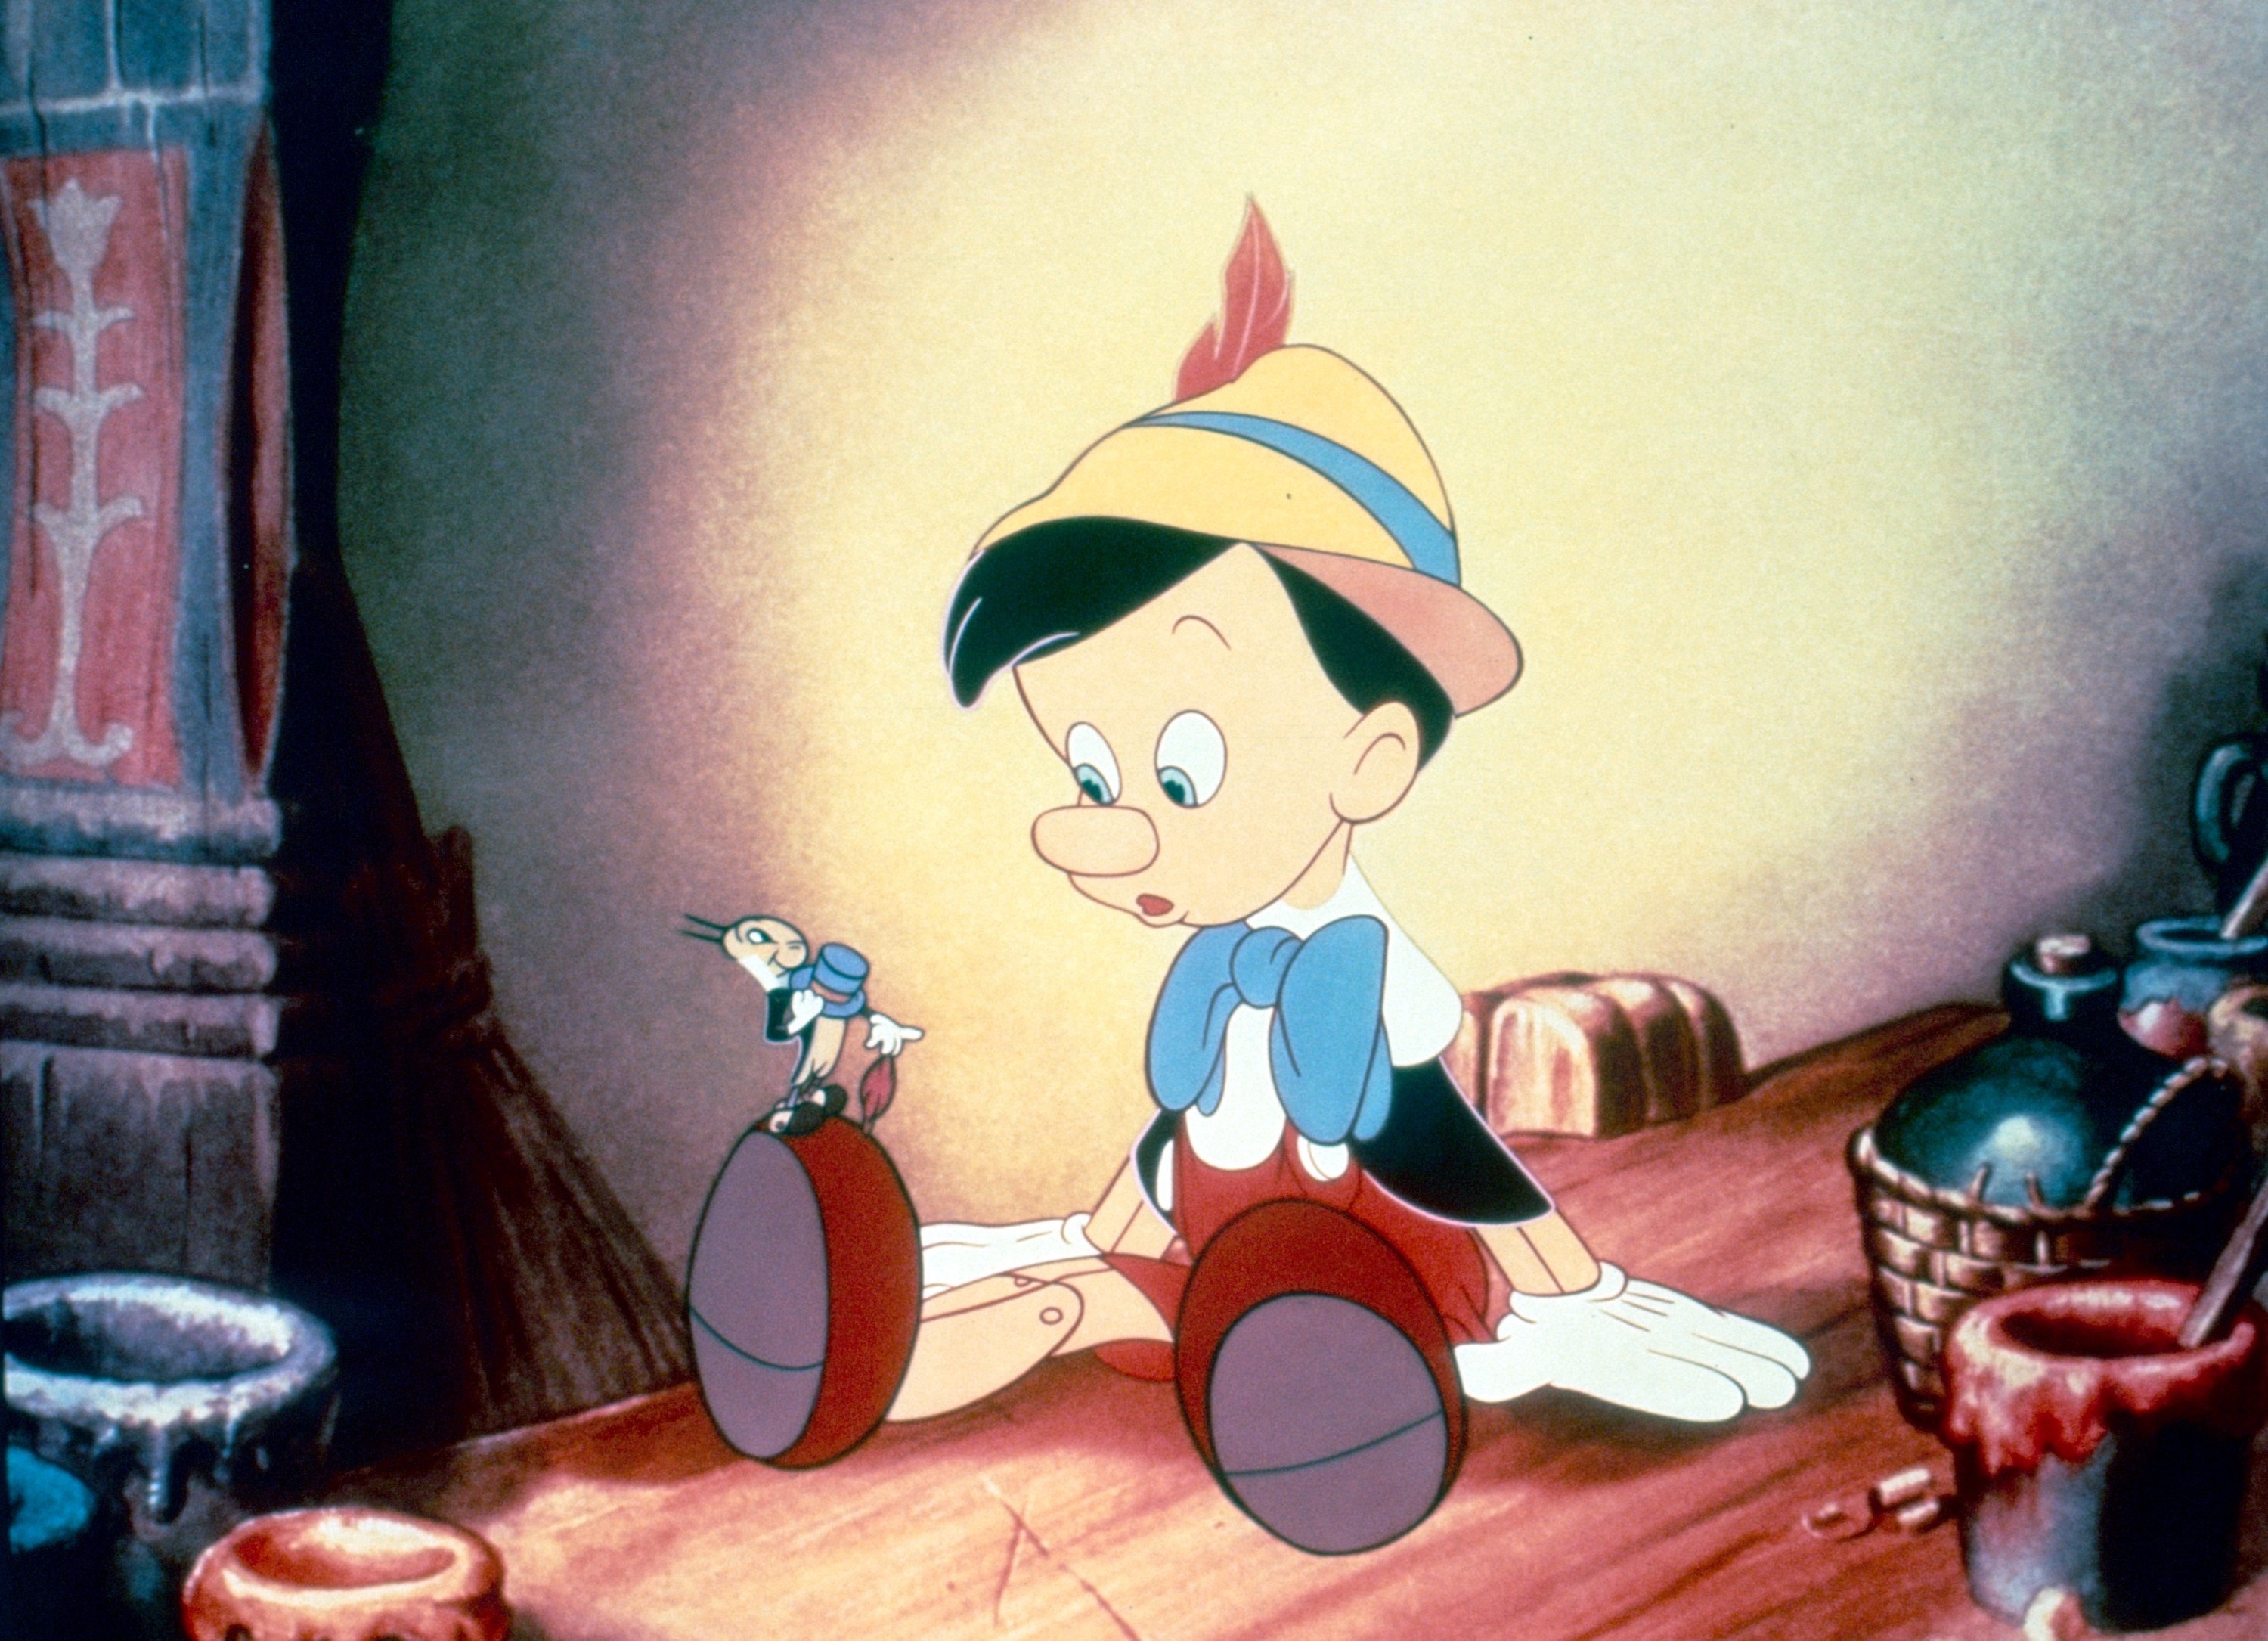 Jiminy Cricket talking to Pinocchio